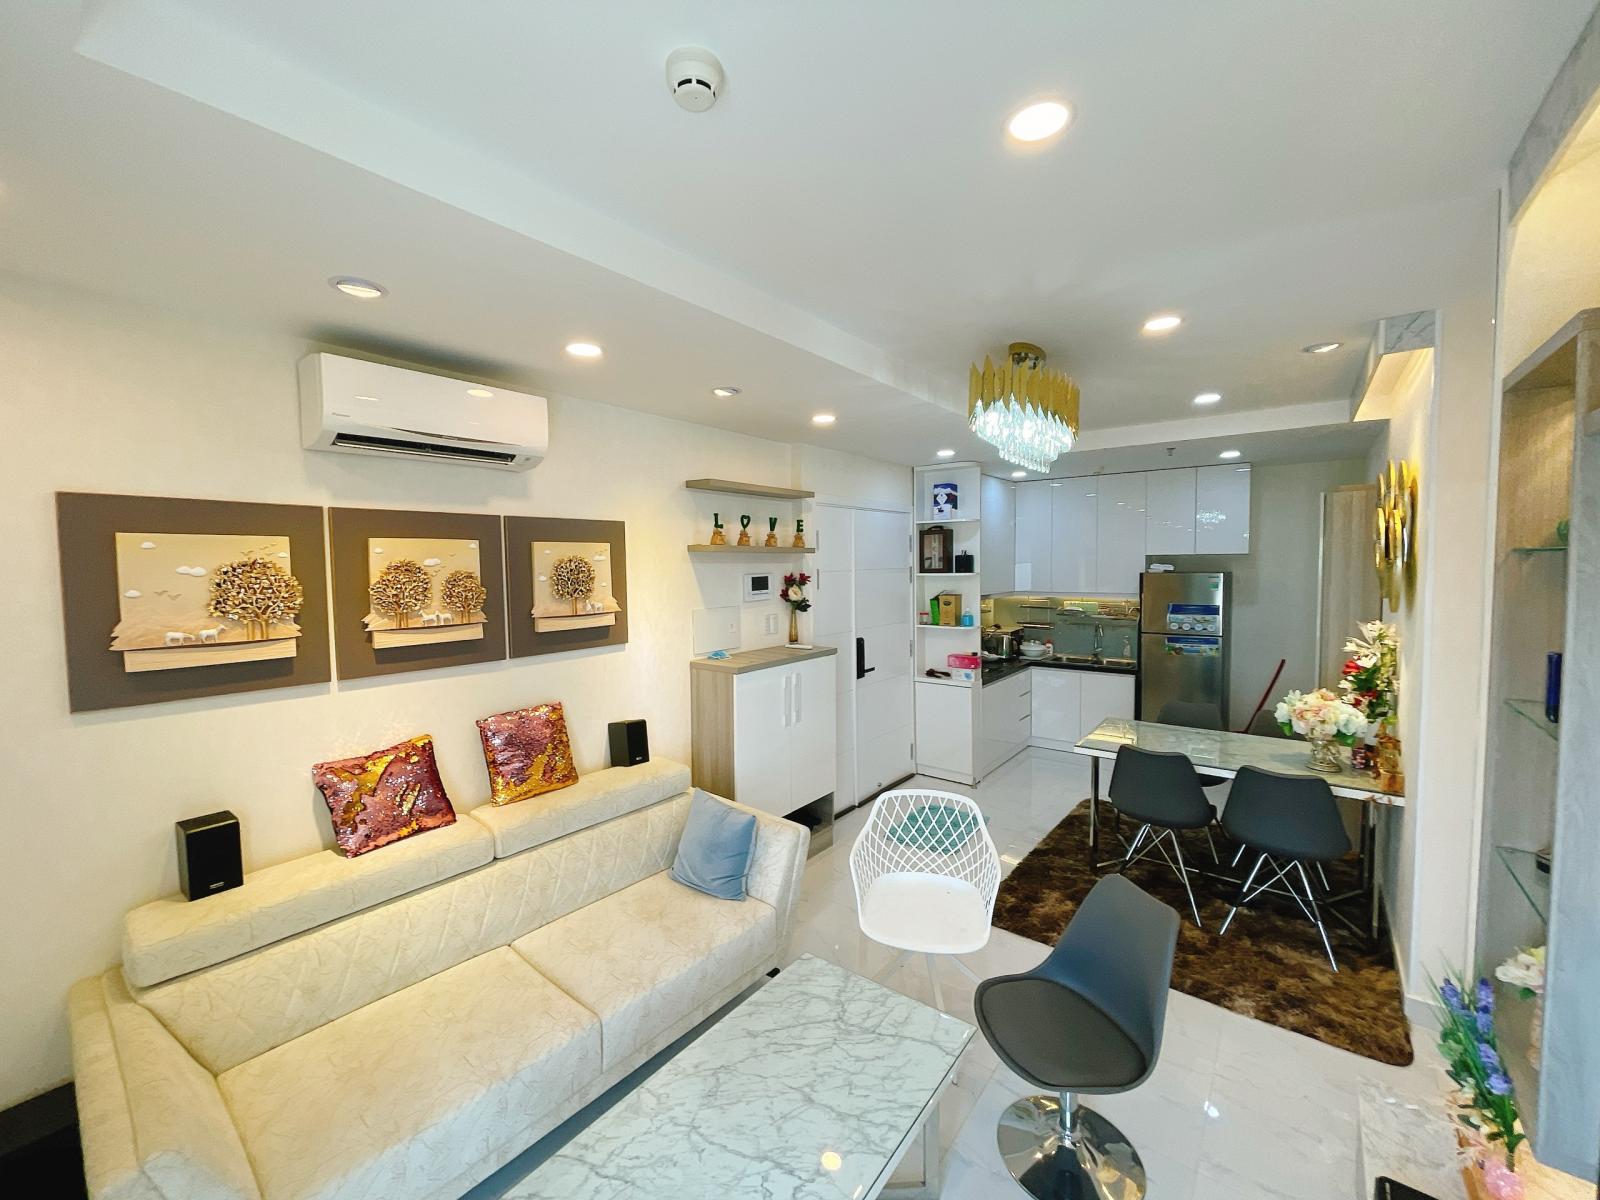 Cho thuê gấp căn hộ Tera Royal vip nhất nhì Q. 3, 72m2, 2pn, full NT, nhà đẹp như mơ. 